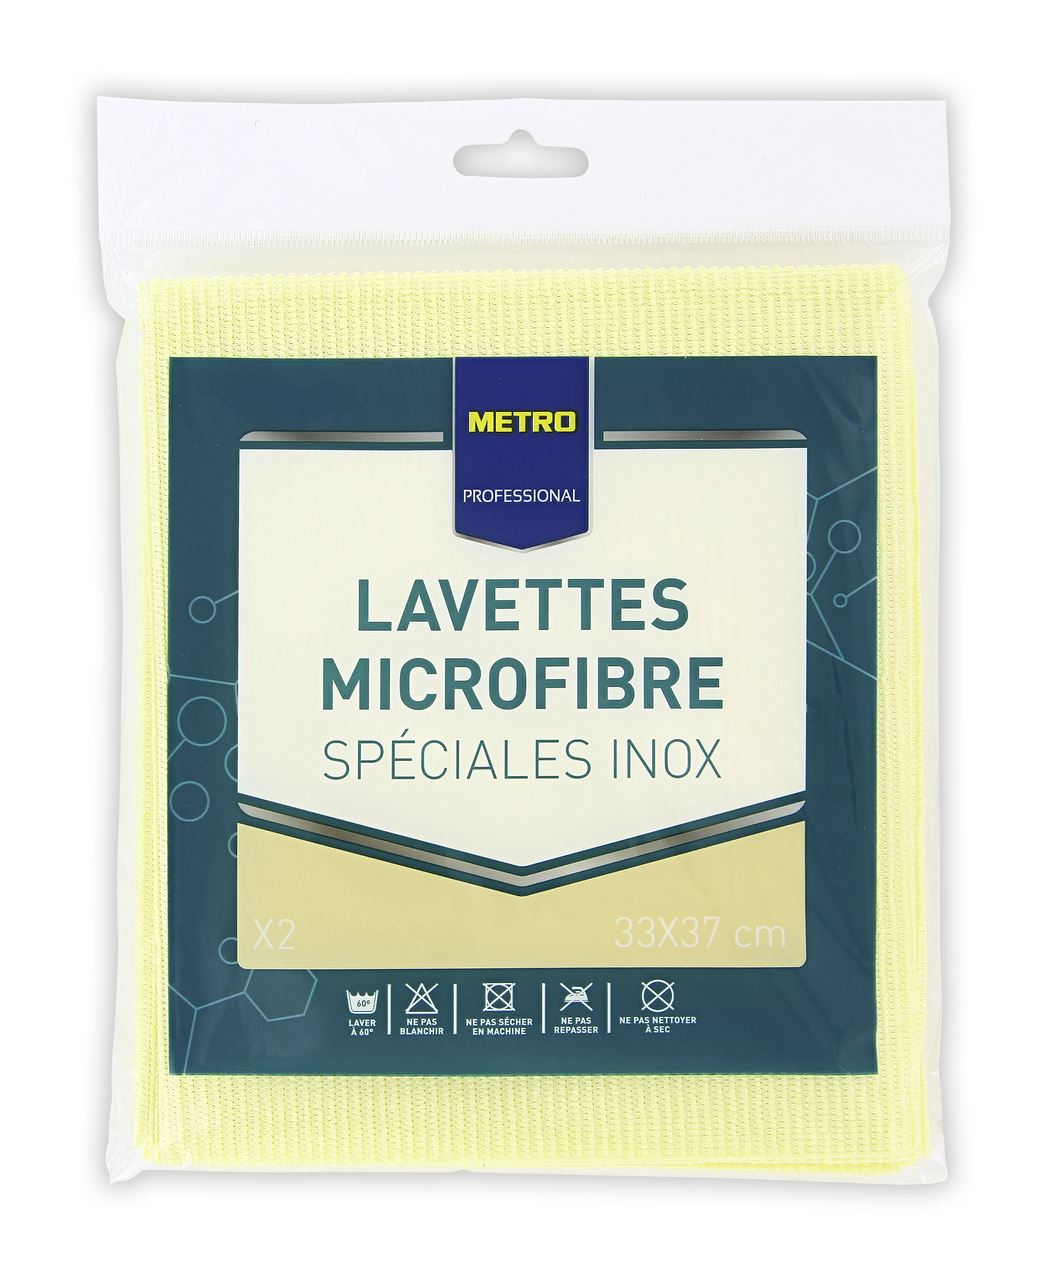 Lavette microfibre spéciale inox 33 x 37 cm x 2